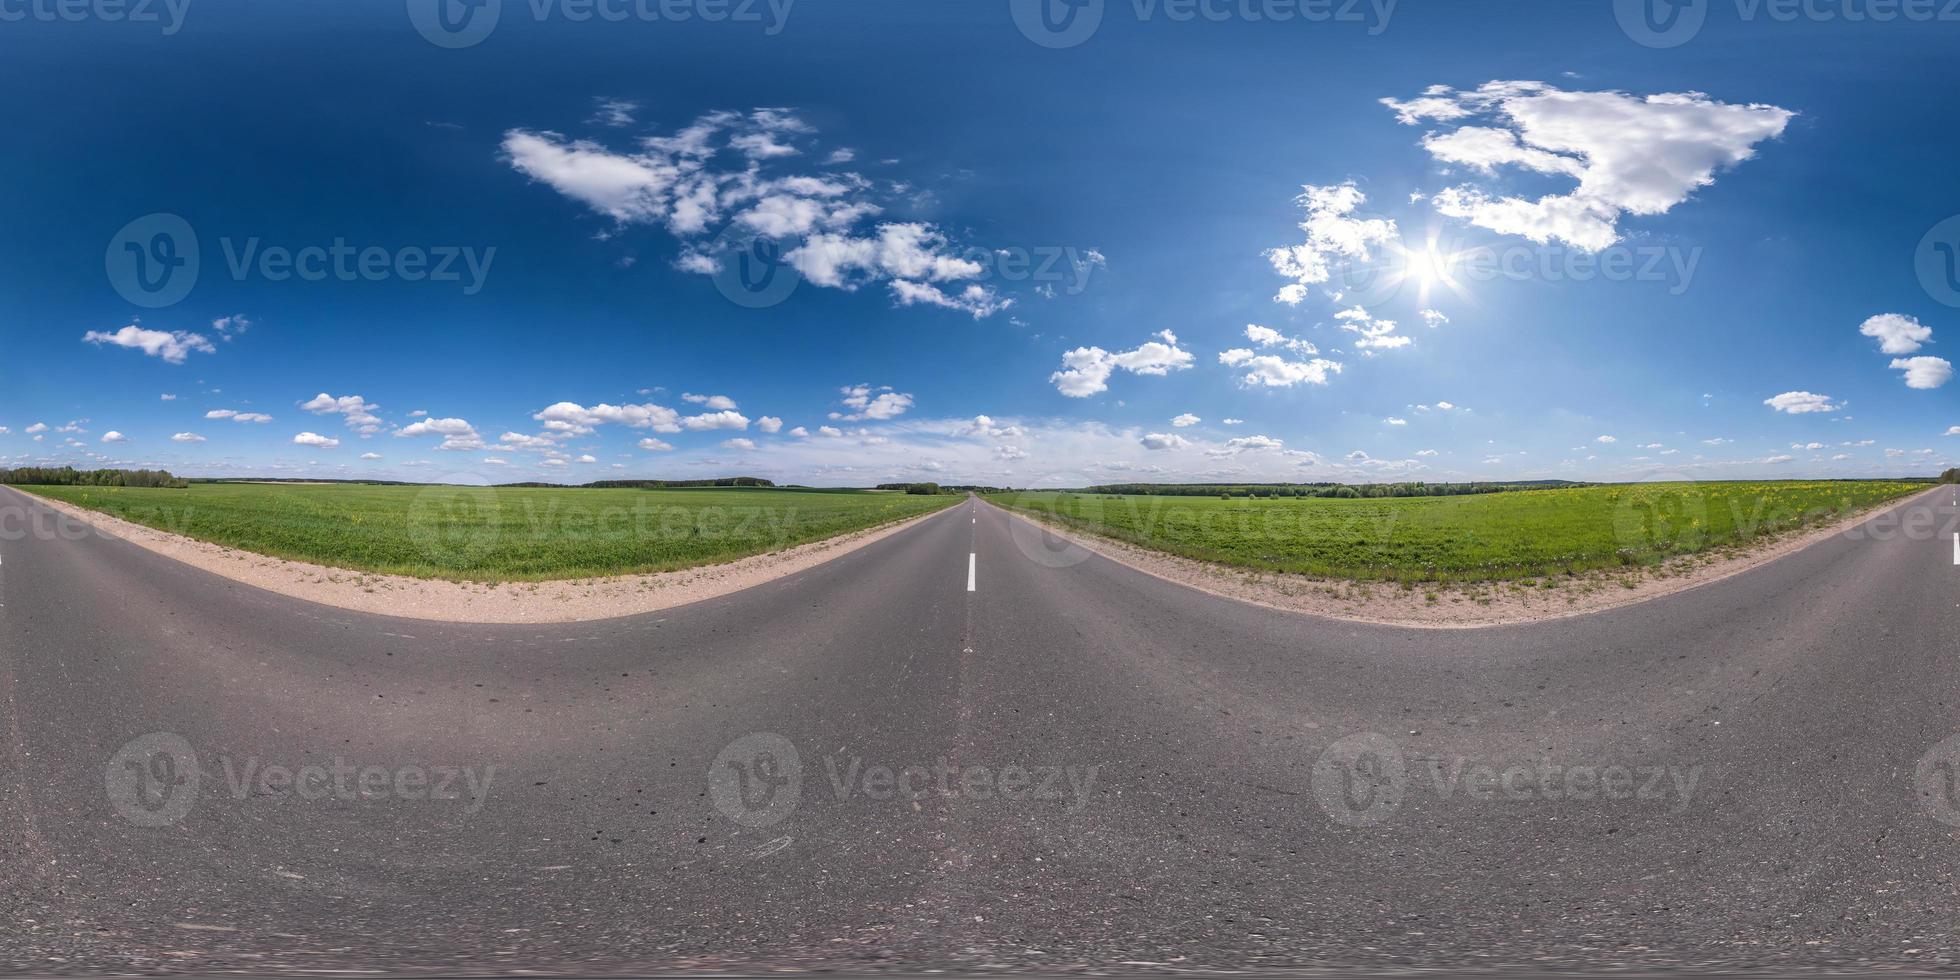 volledig bolvormig naadloos panorama 360 graden hoekzicht op asfaltweg zonder verkeer tussen velden met bewolkte lucht in equirectangular projectie, vr ar-inhoud foto